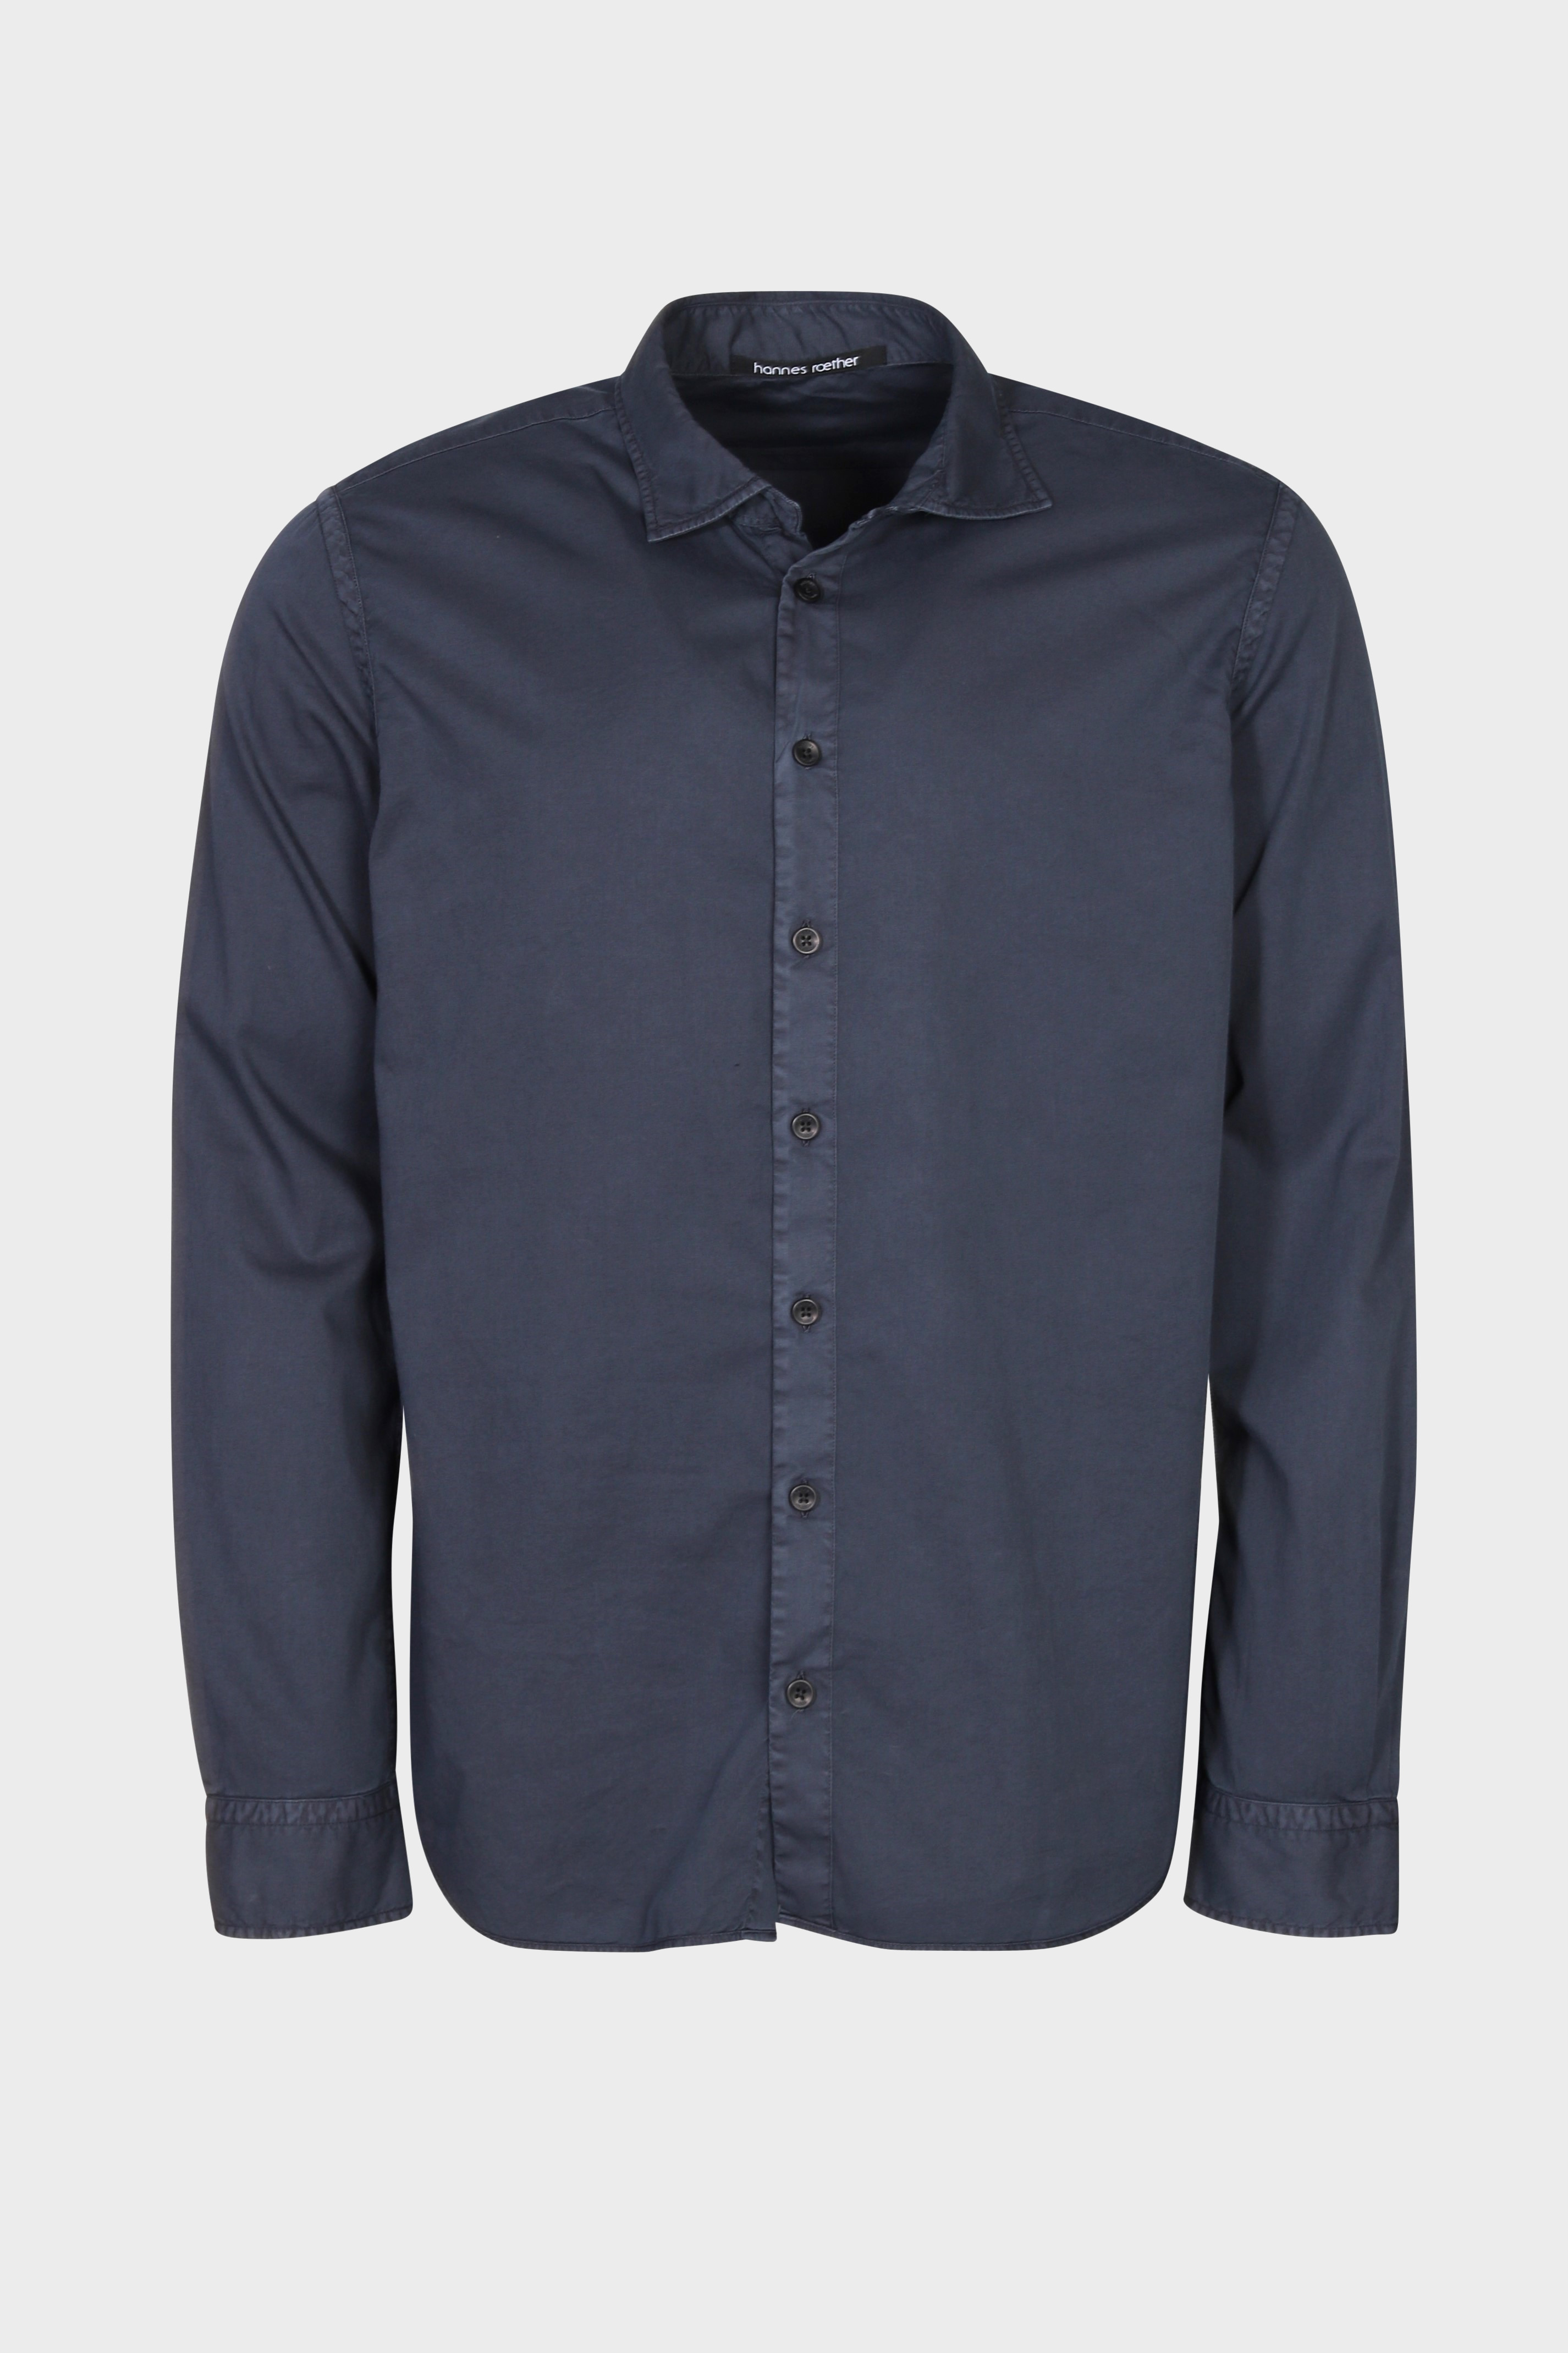 HANNES ROETHER Cotton Shirt in Dark Blue